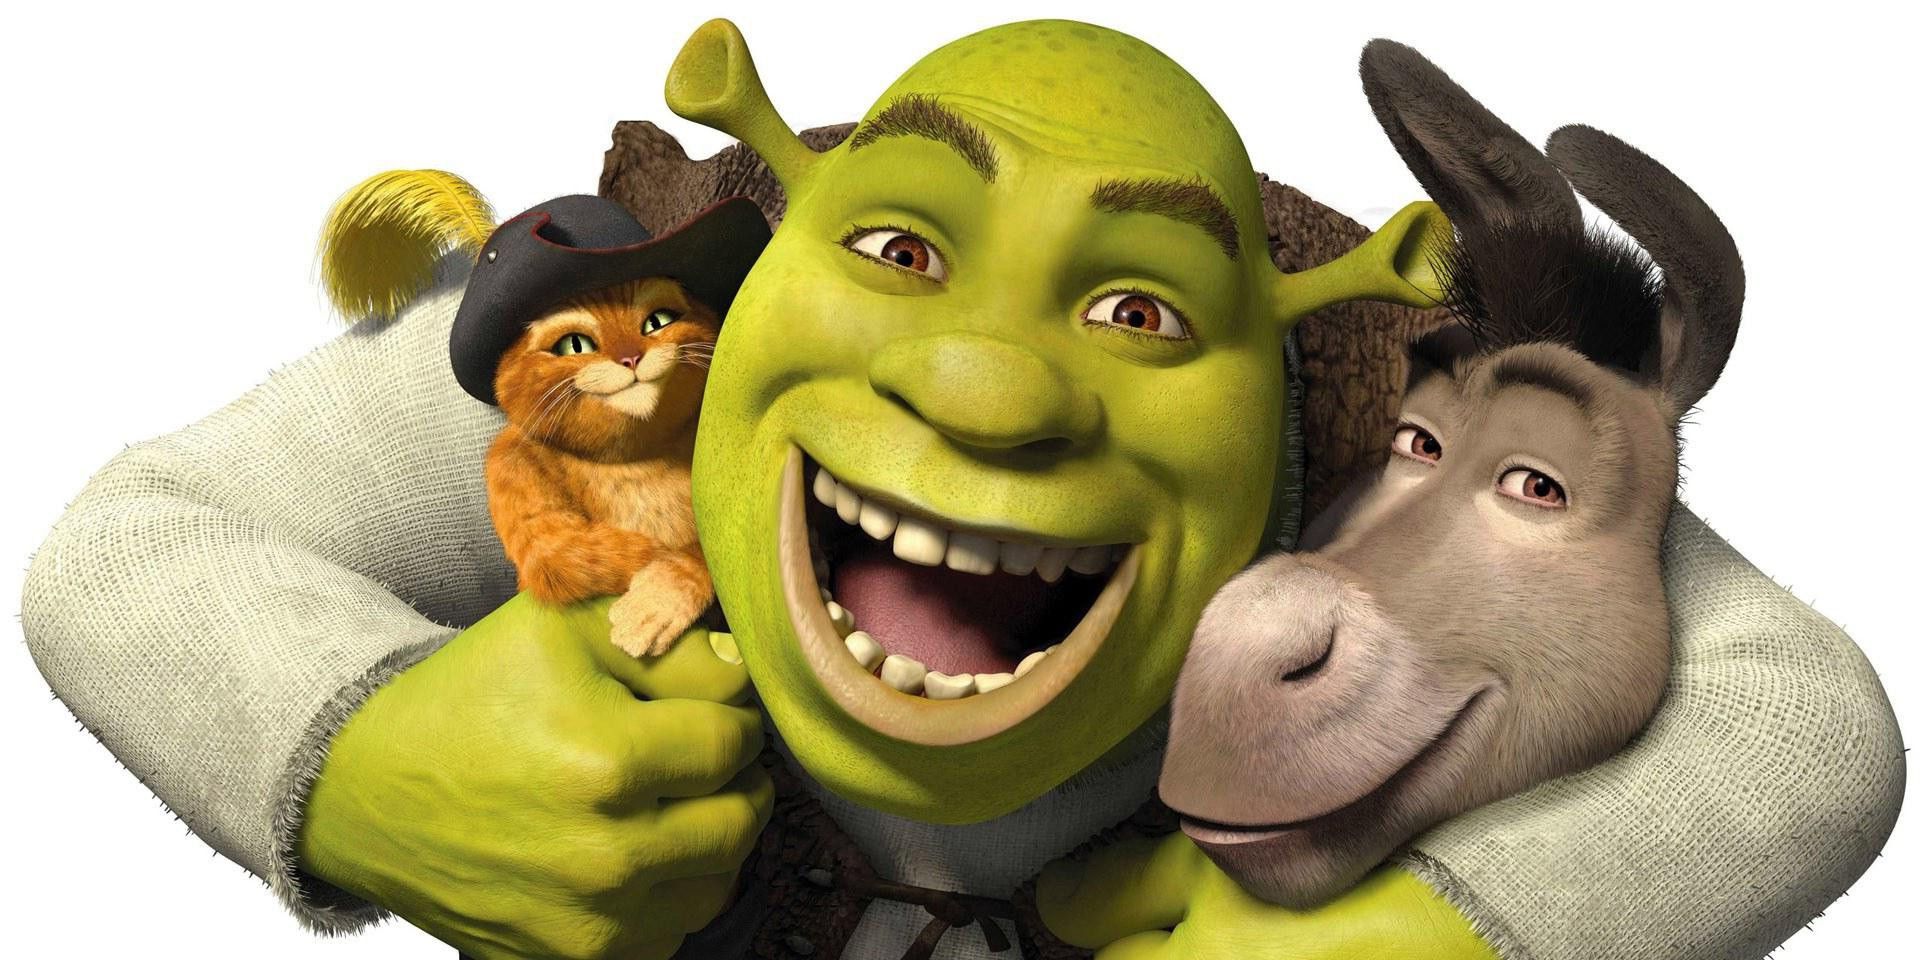 Shrek 5 Arrives in 2019